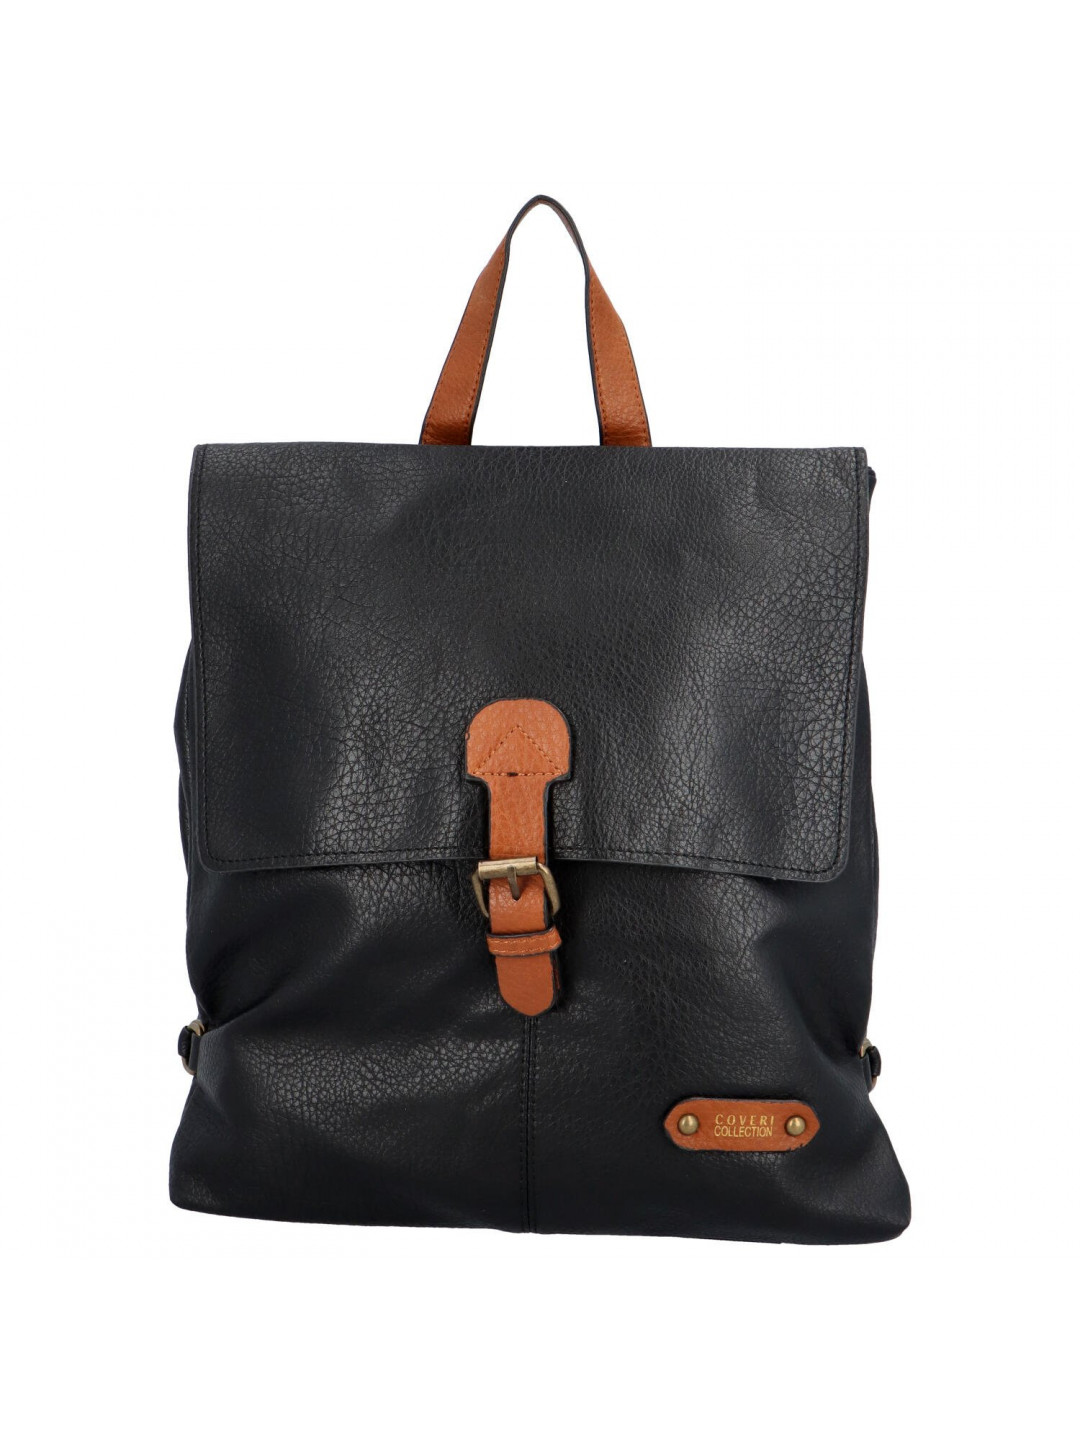 Stylový dámský koženkový kabelko-batoh Baldomero černá